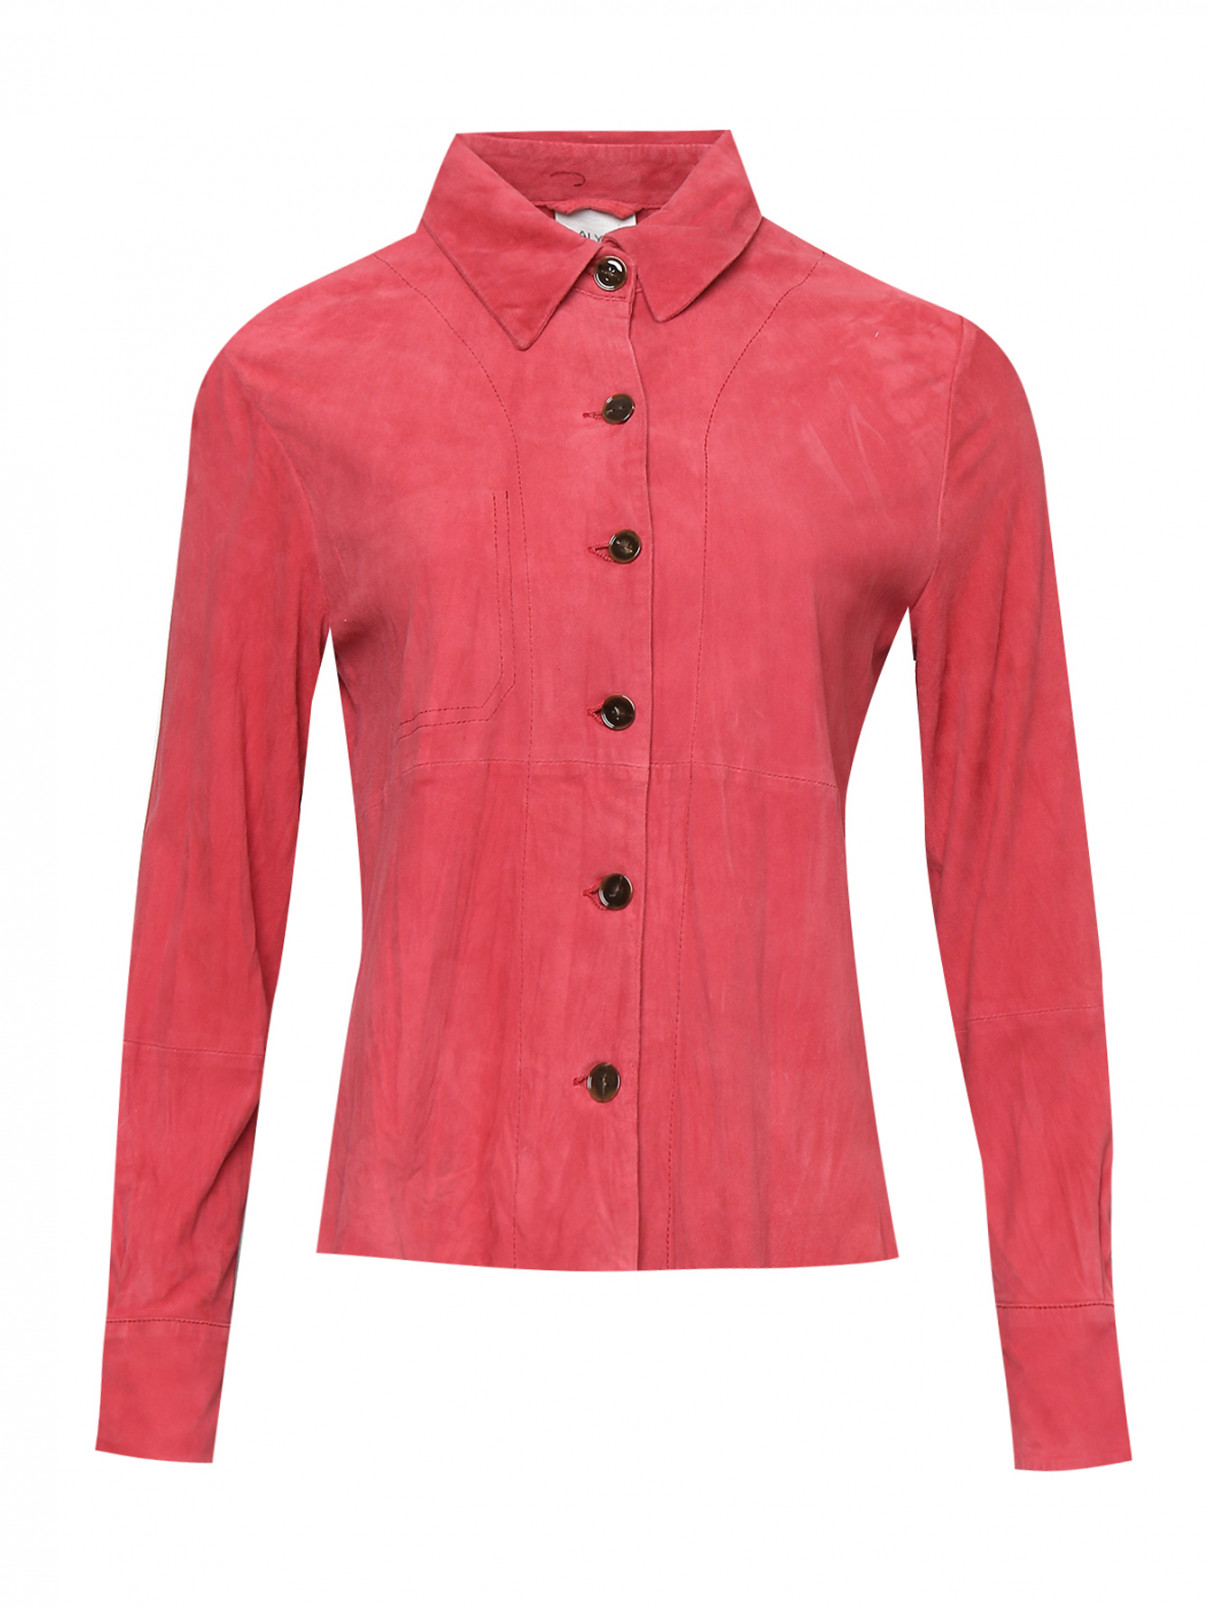 Рубашка из замши на пуговицах Alysi  –  Общий вид  – Цвет:  Розовый